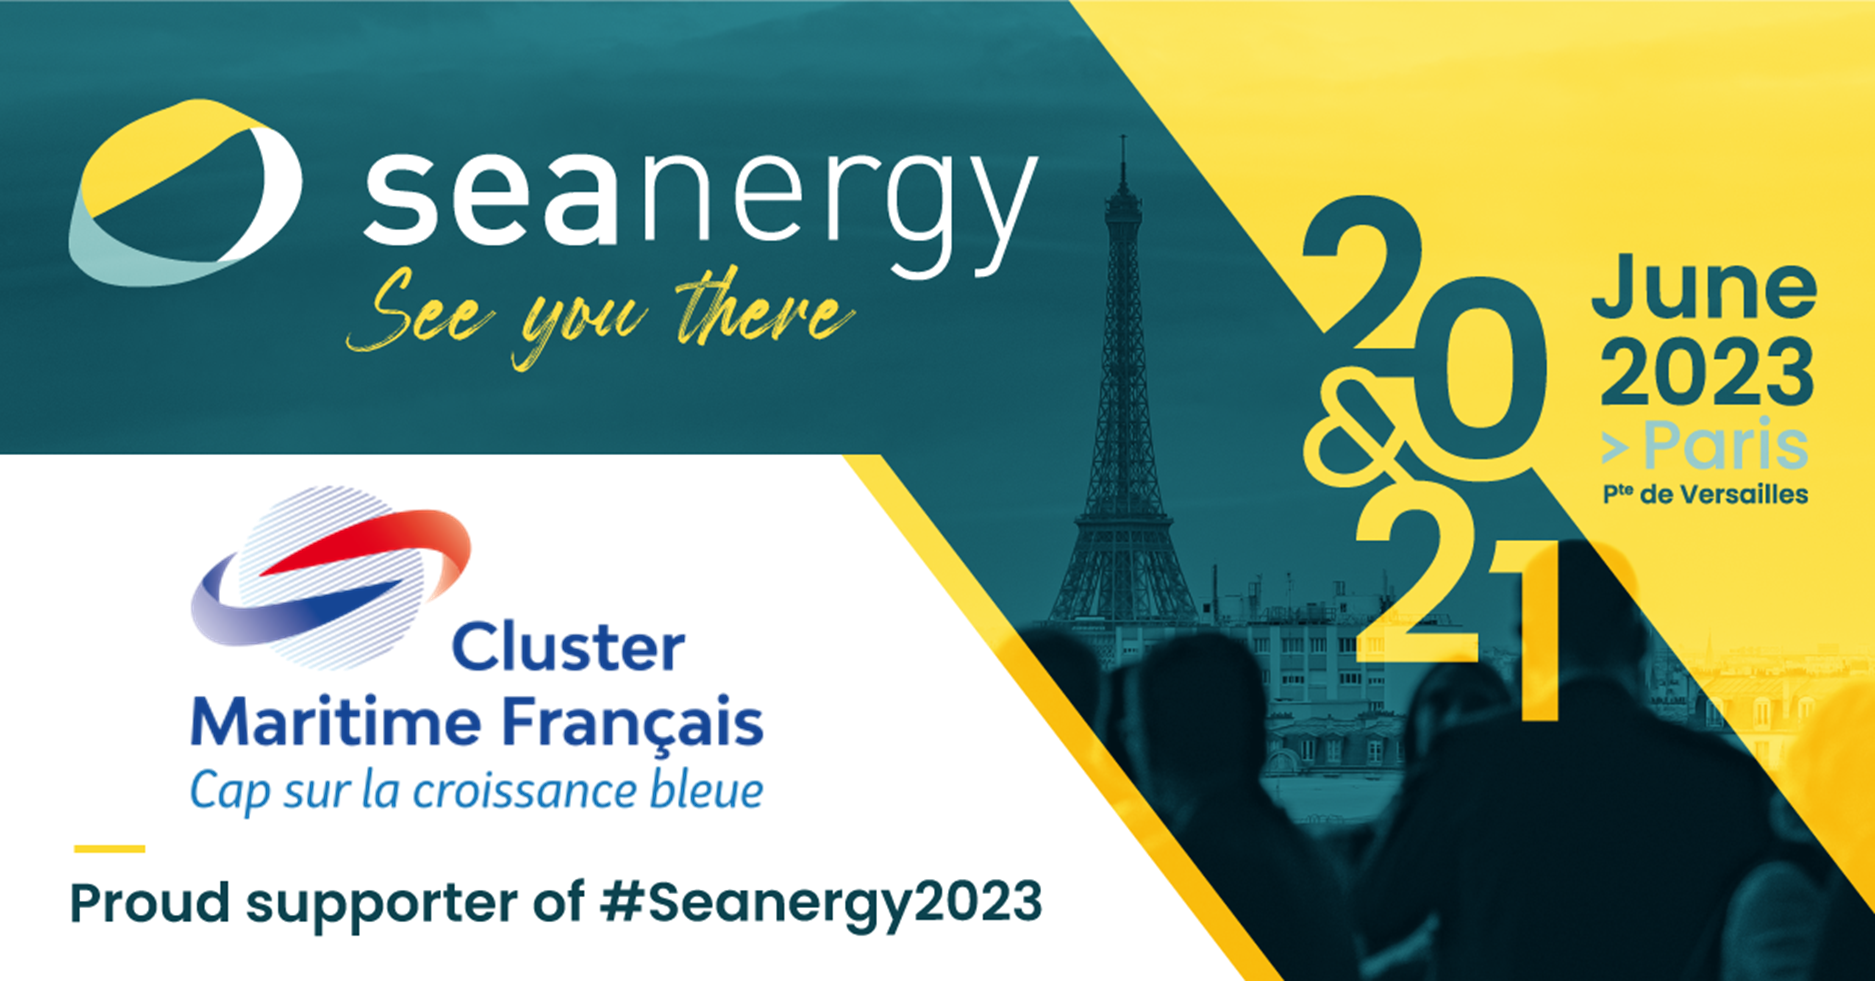 Seanergy, les 20 et 21 juin 2023 à Paris expo Porte de Versailles : offre exceptionnelle aux membres du CMF